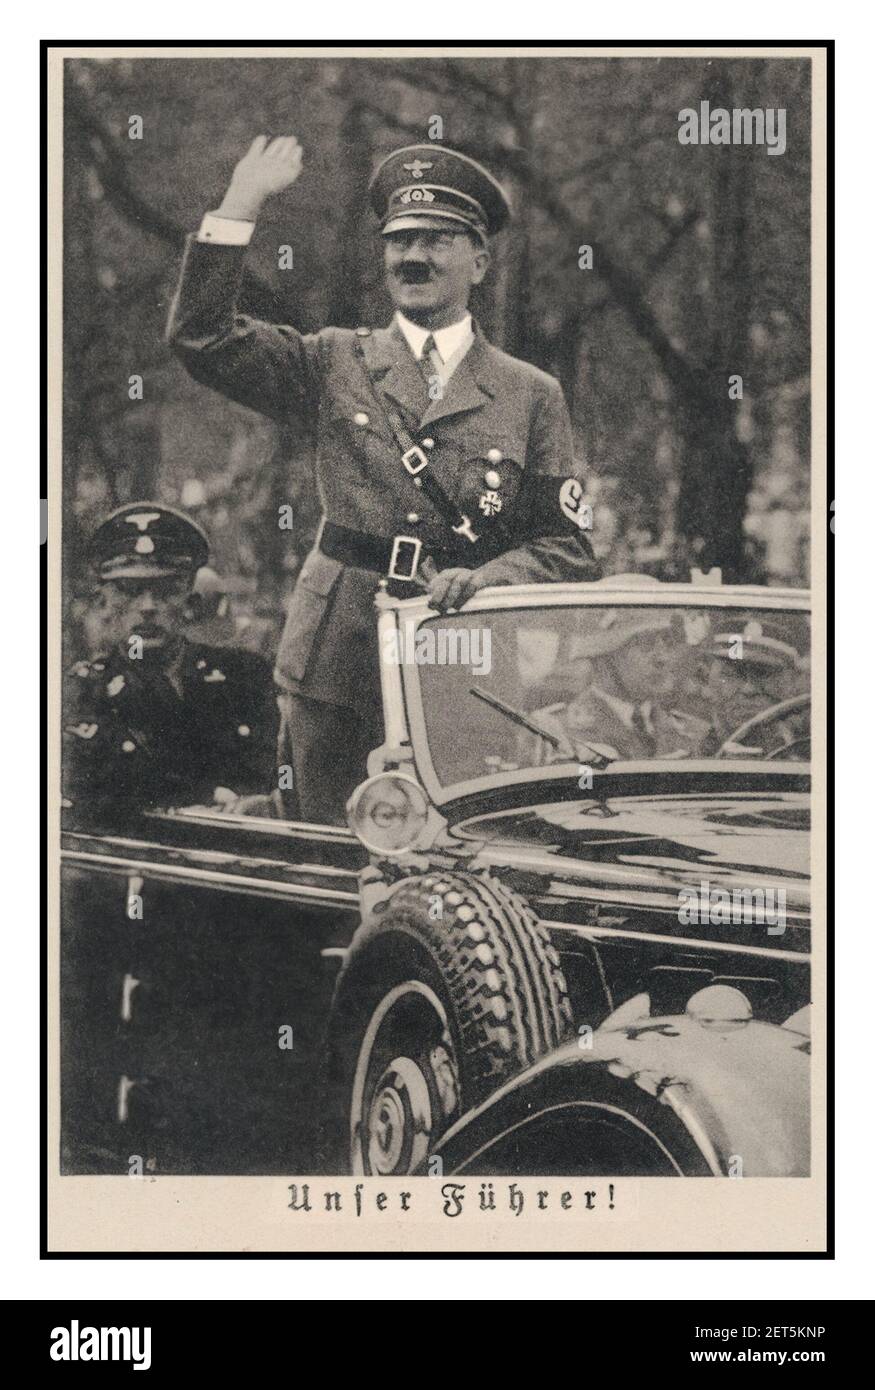 Immagine di Propaganda nazista d'epoca di Adolf Hitler 1940 in Mercedes open top che saluta Heil Hitler alle folle 'UNFER Führer' IL NOSTRO LEADER ! Foto Stock